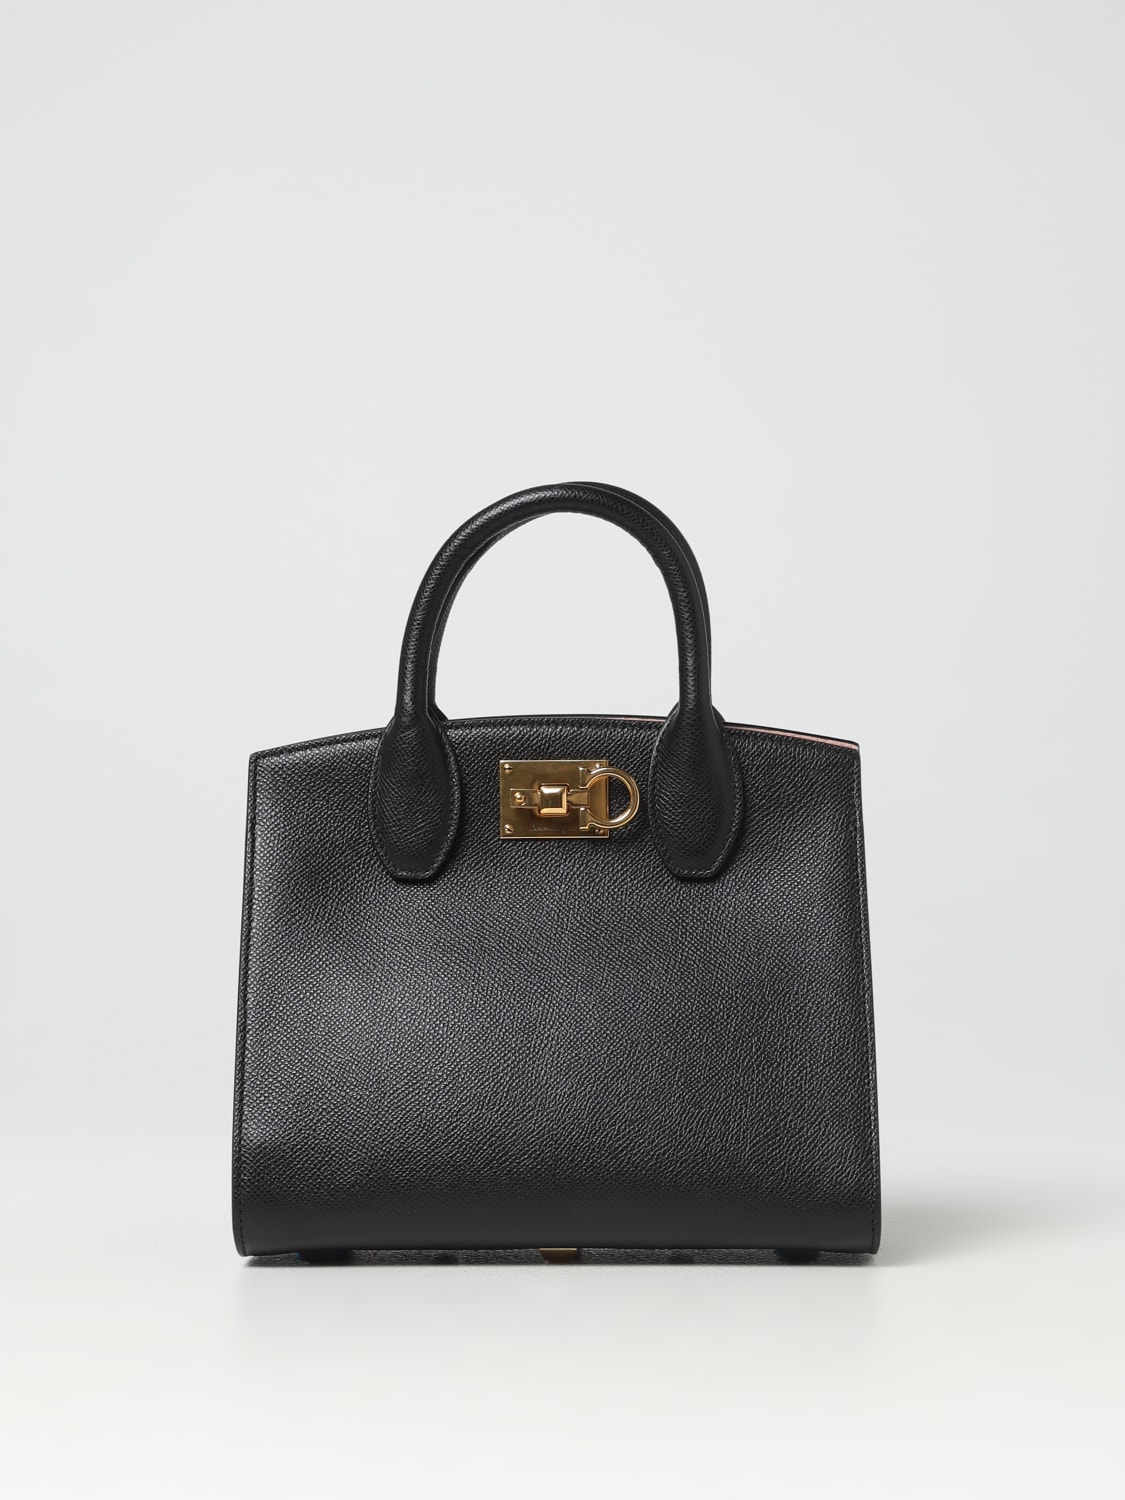 Ferragamo Studio Small Leather Box Bag